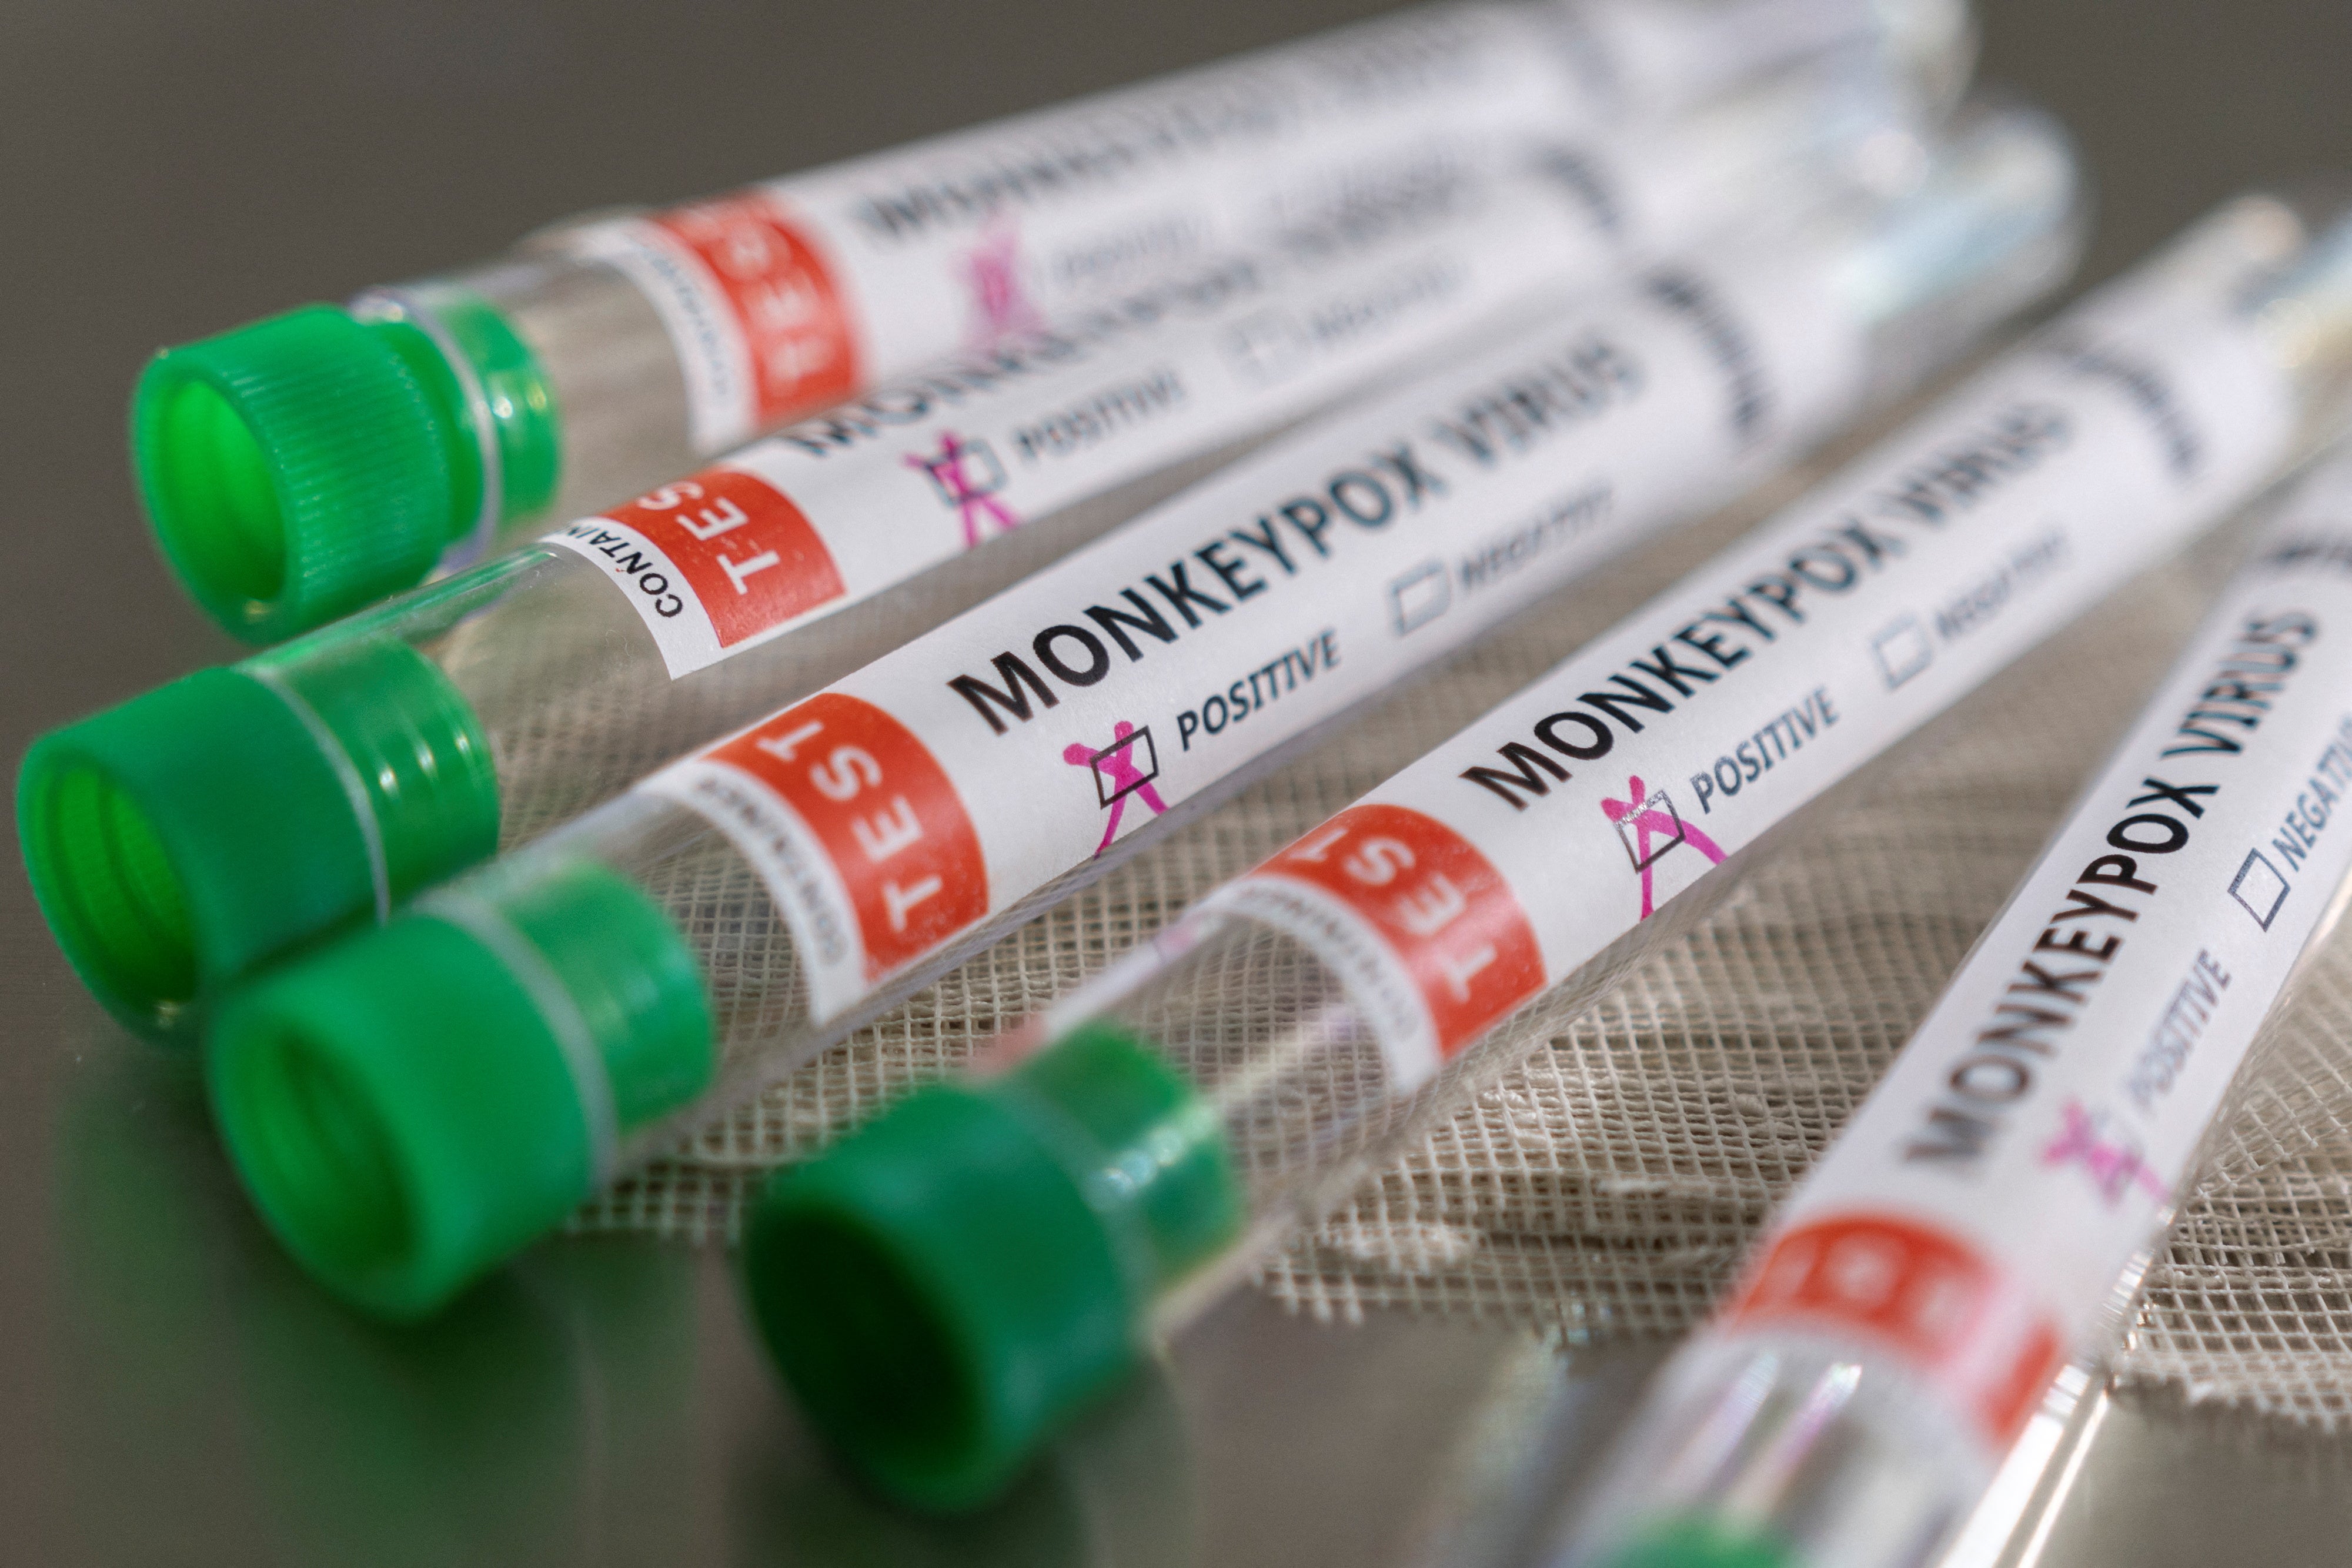 Test tubes marked ‘Monkeypox virus’ – stock image